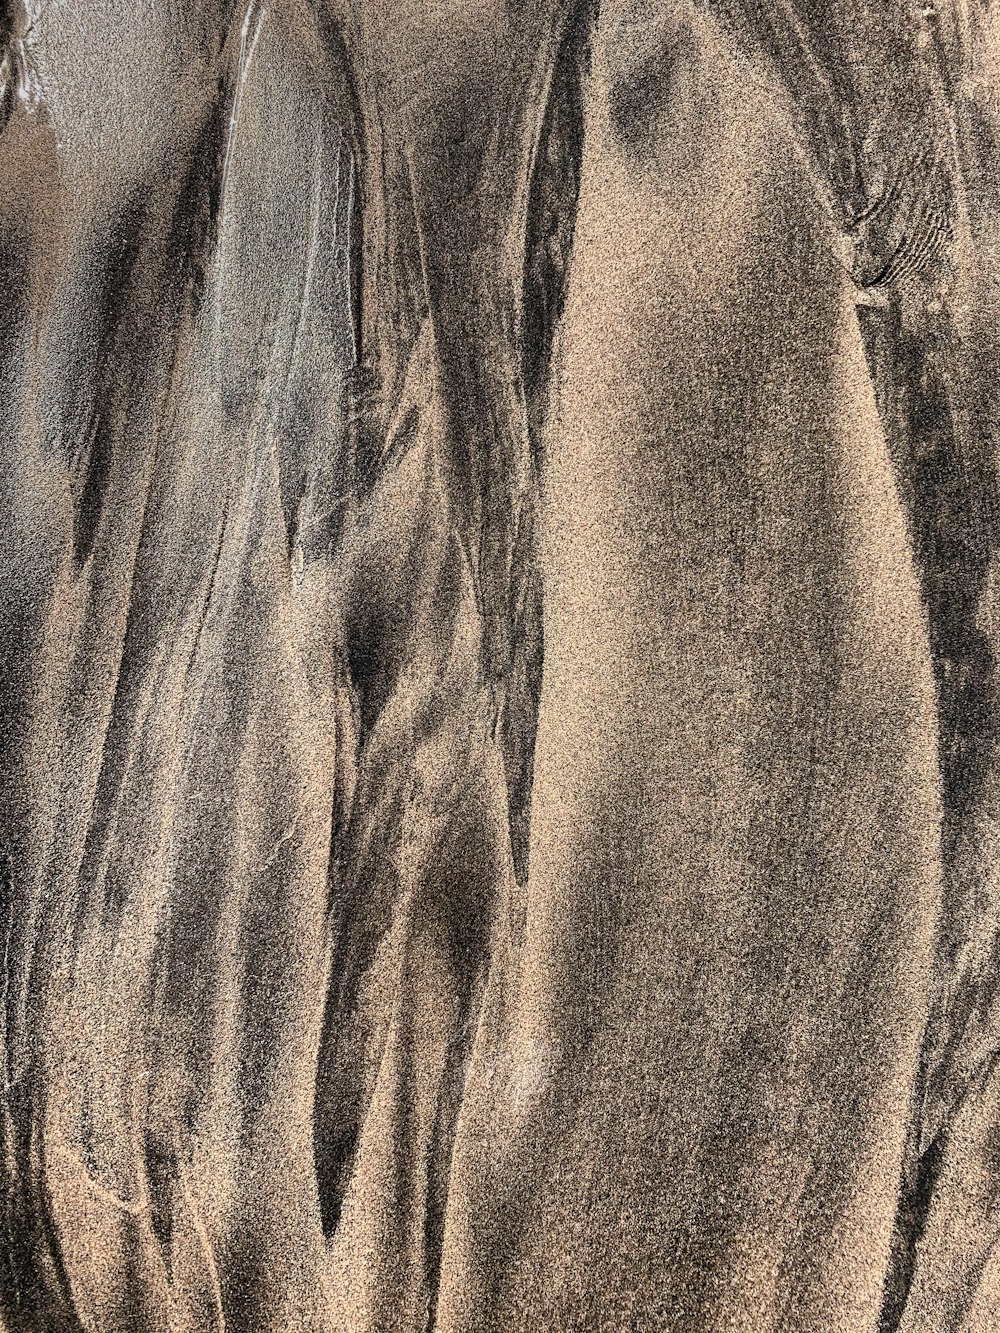 Braunes Textil in der Nahaufnahme